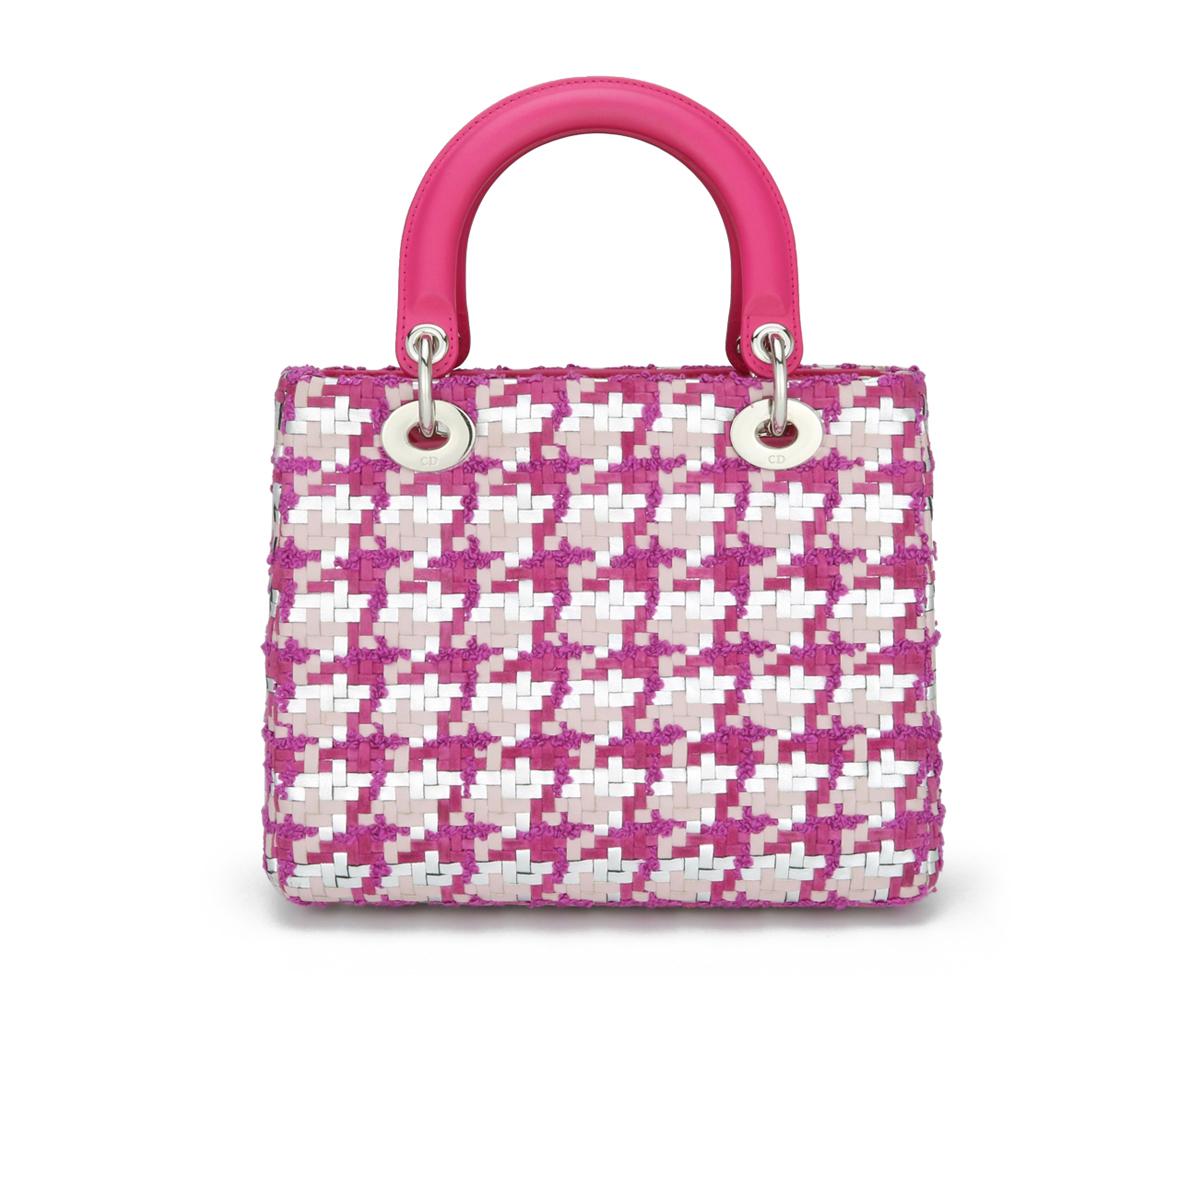 Christian Dior Lady Dior Medium Bag in Pink & Silver Tweed & Lammleder mit silberner Hardware 2013.

Diese Tasche ist in sehr gutem Zustand. 

- Äußerer Zustand: Sehr guter Zustand. Die Ecken weisen eine leichte Abnutzung der Lederoberfläche auf.